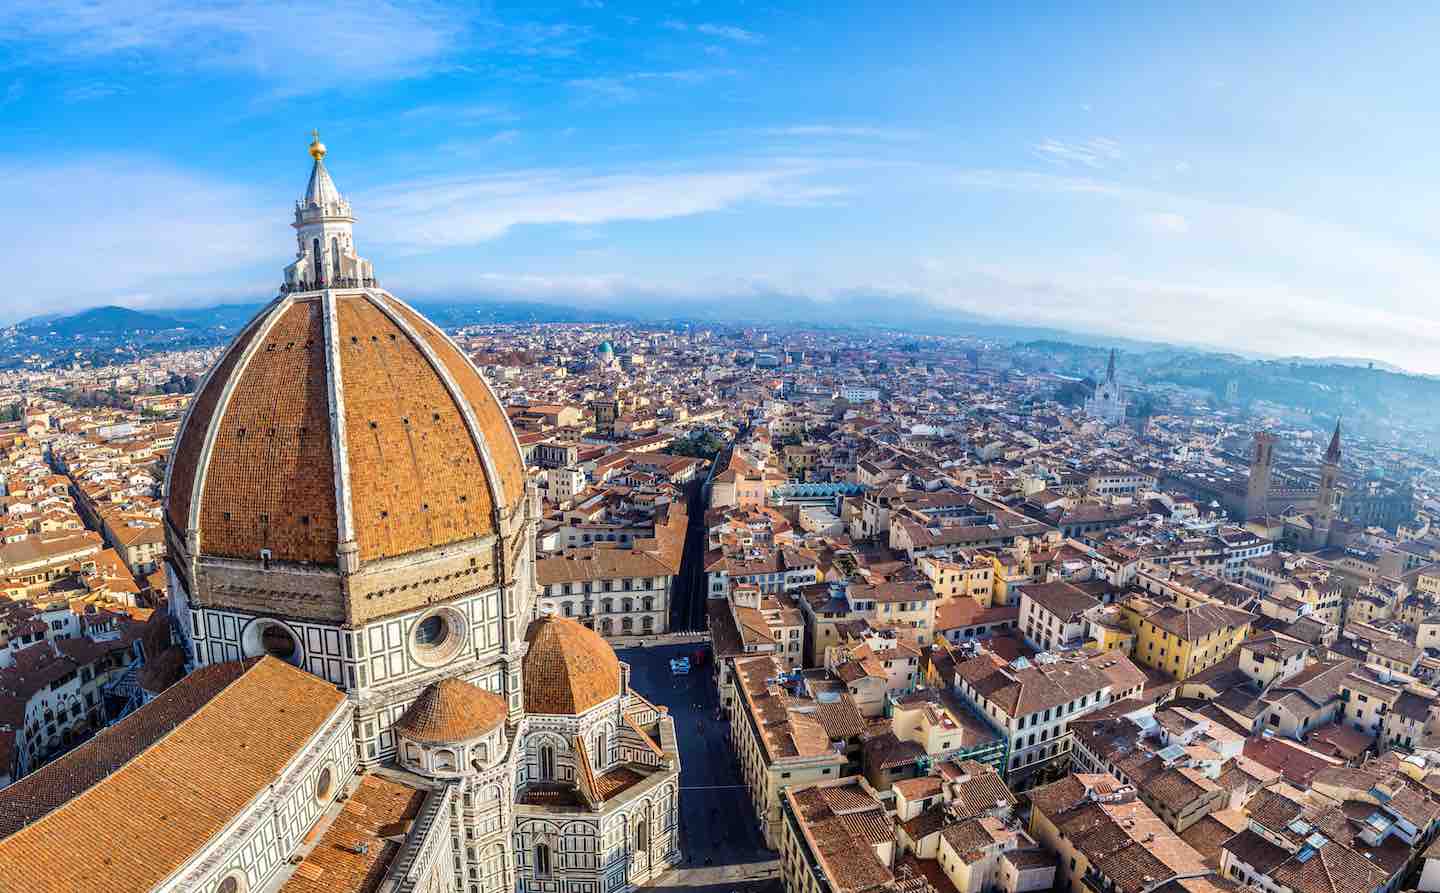 Alla scoperta della Firenze nascosta: dalla testa di toro sulla facciata del Duomo, all' autoritratto di Michelangelo scolpito sul muro di Palazzo Signoria